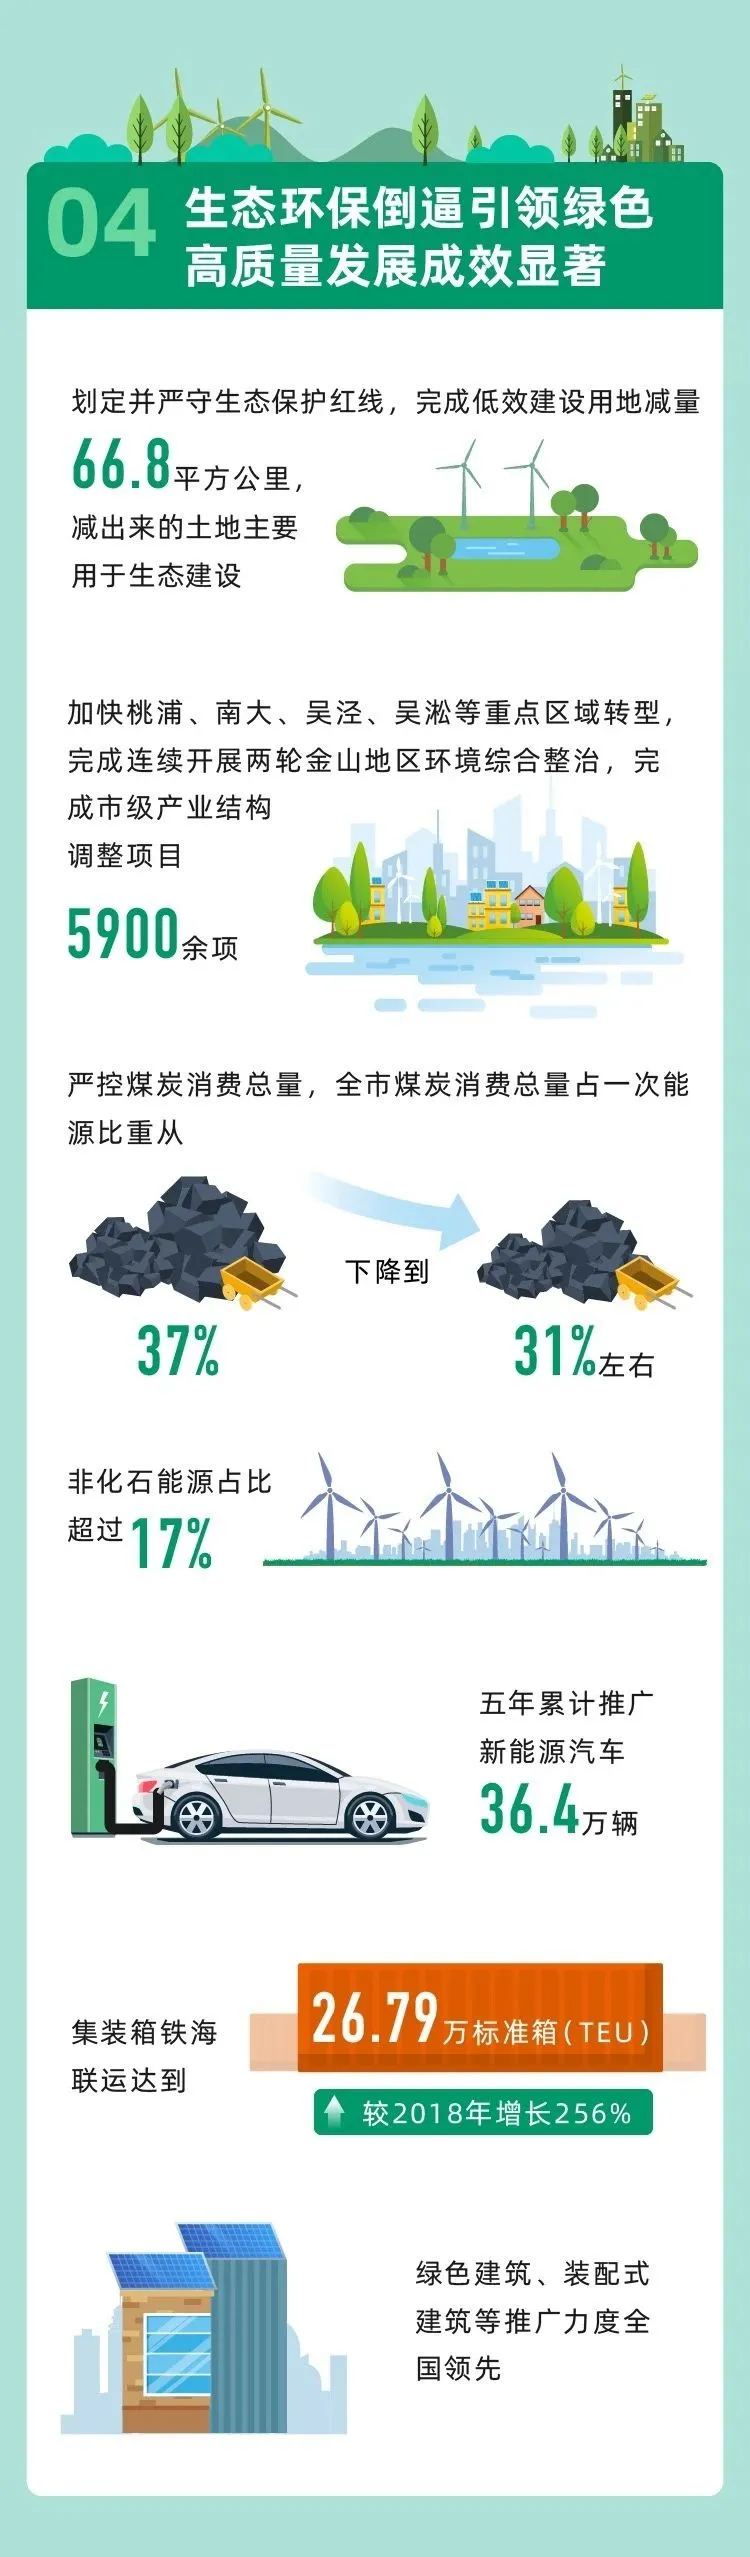 回顾“十三五”，展望“十四五” 上海绿色发展之路将这样走 行业热点 第7张